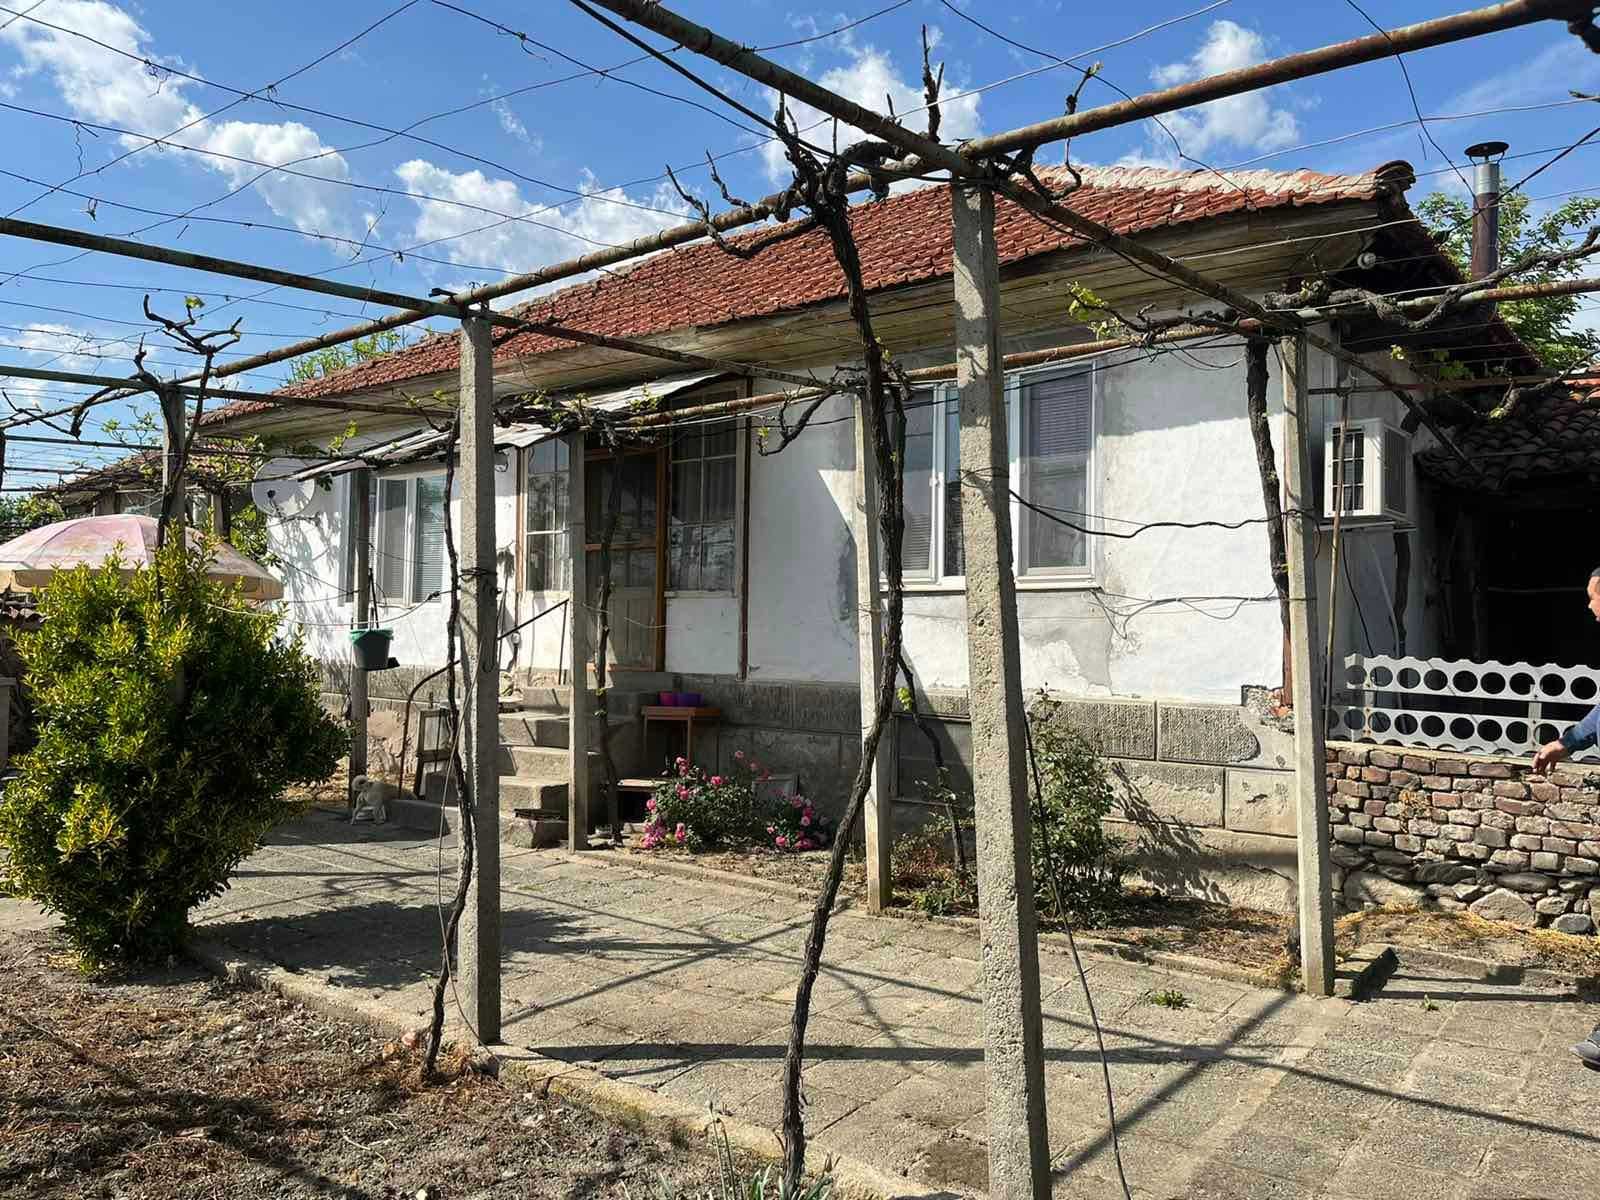 Продава се: Къща /тухла/ ЗП 90 кв.м, двор 2 дка, в село Васил Левски